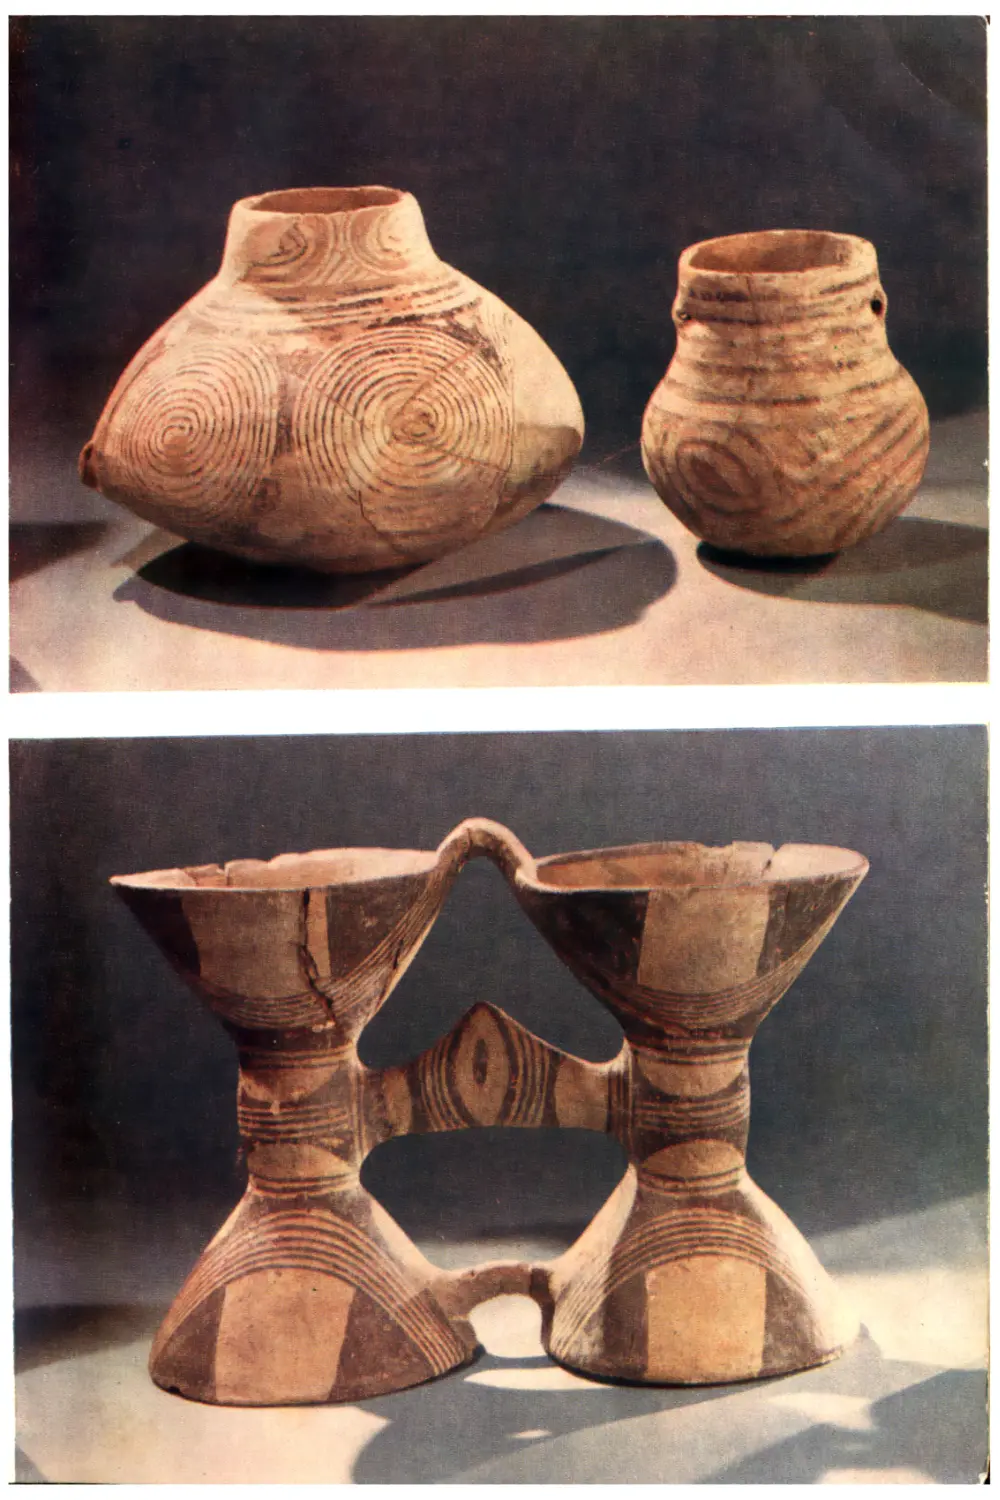 Вклейка. Расписная керамика позднетрипольской культуры